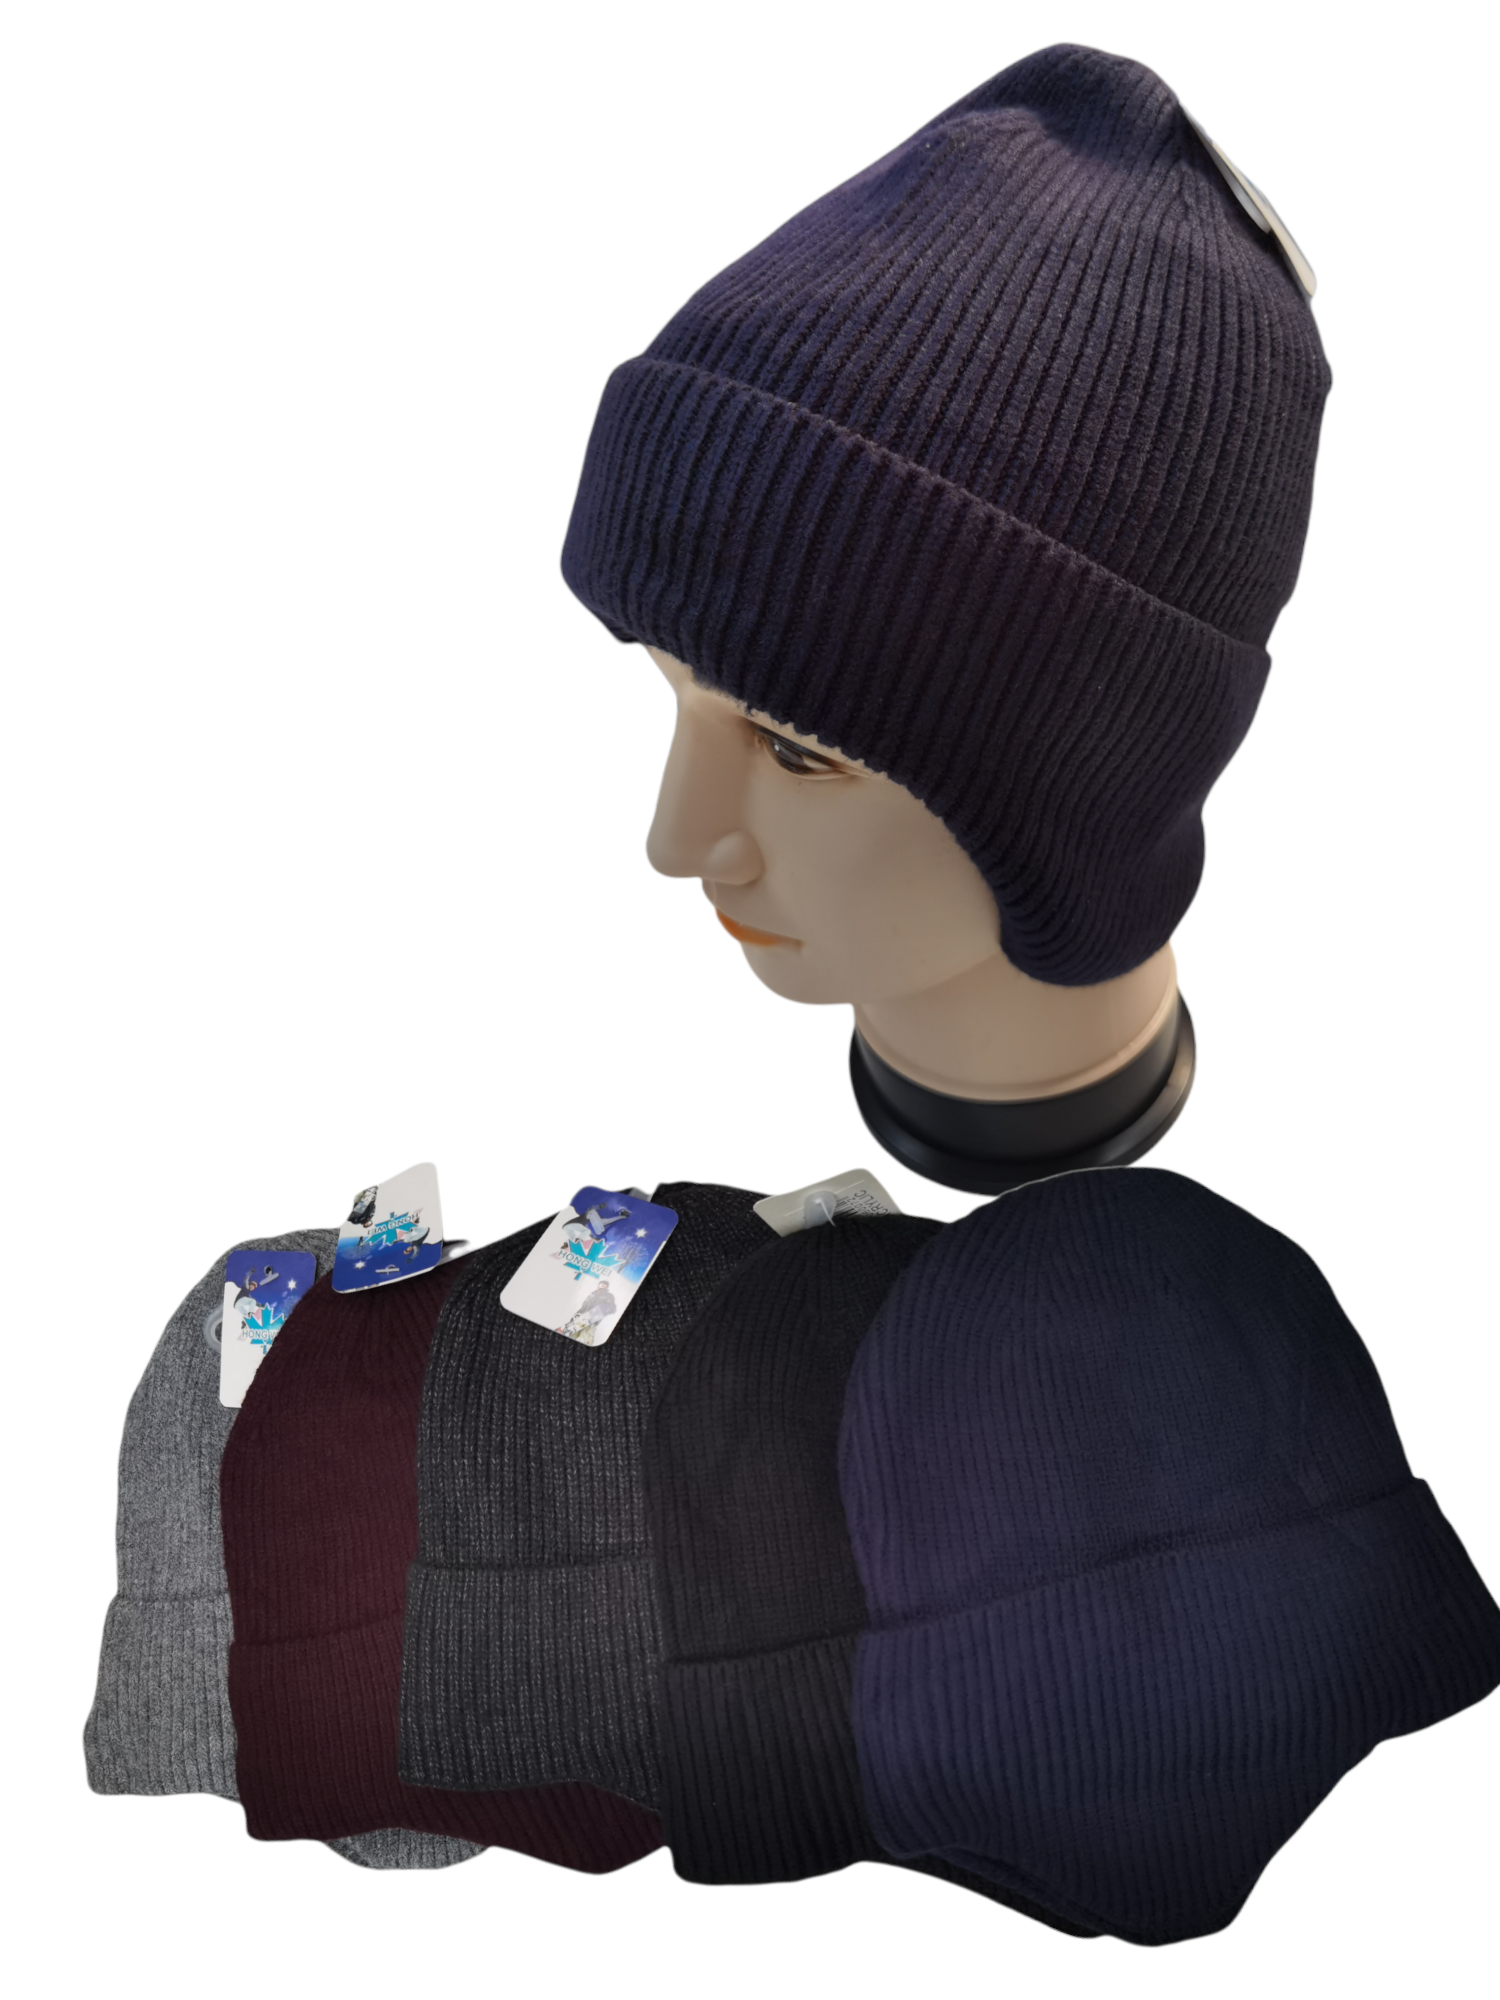 Bonnet cache-oreilles en tricot